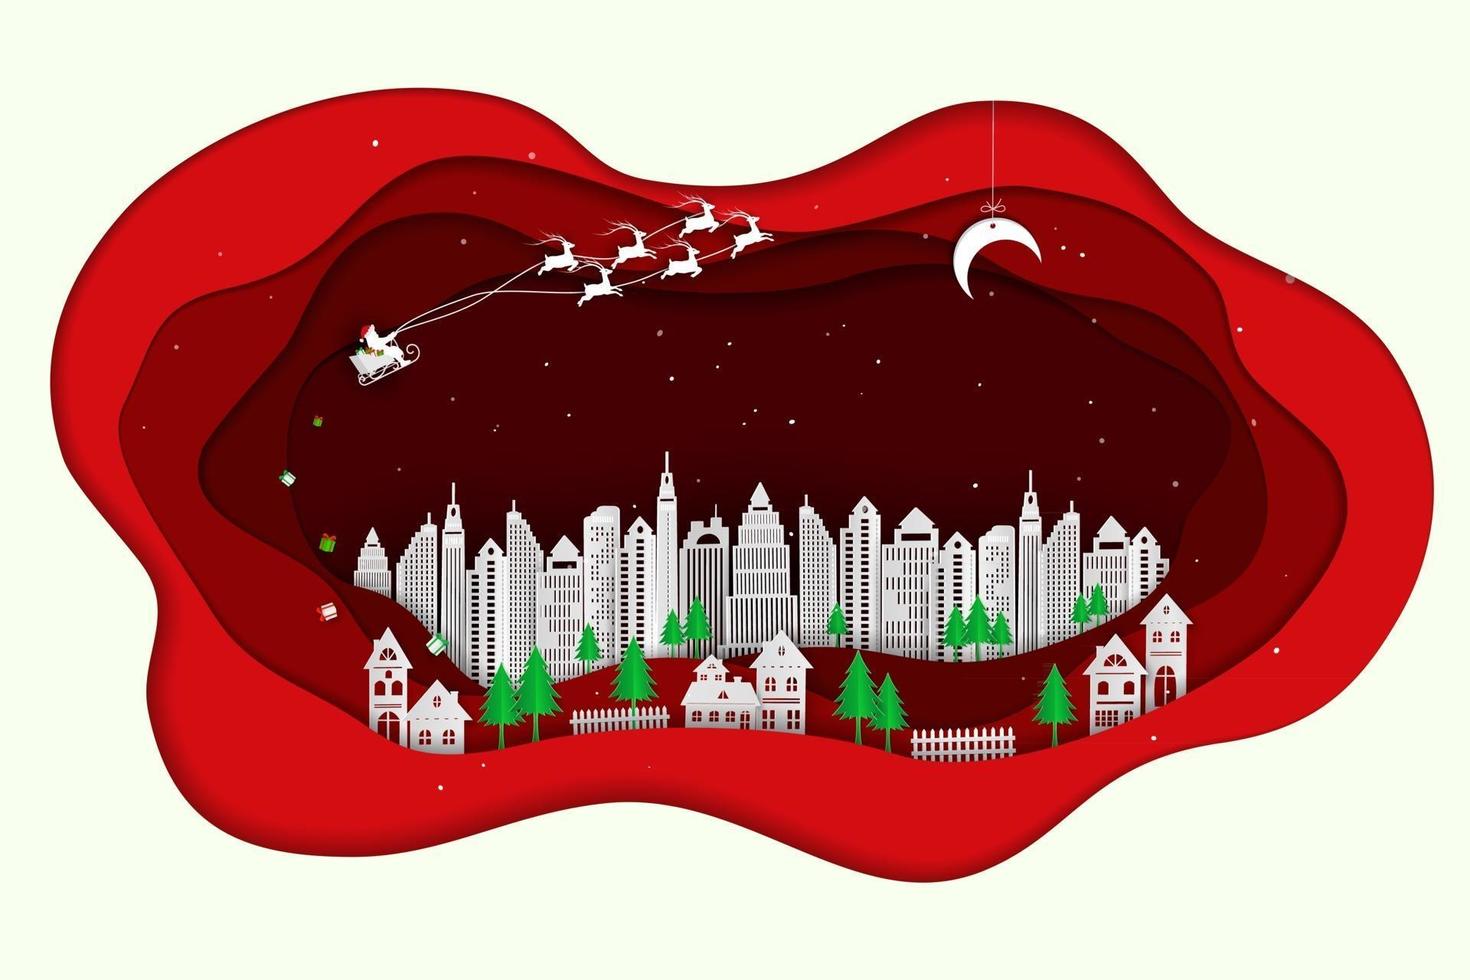 de kerstman komt naar de stad op rood papier kunst abstract ontwerp als achtergrond voor kerstvakantie feest partij gelukkig nieuwjaar of wenskaart vector